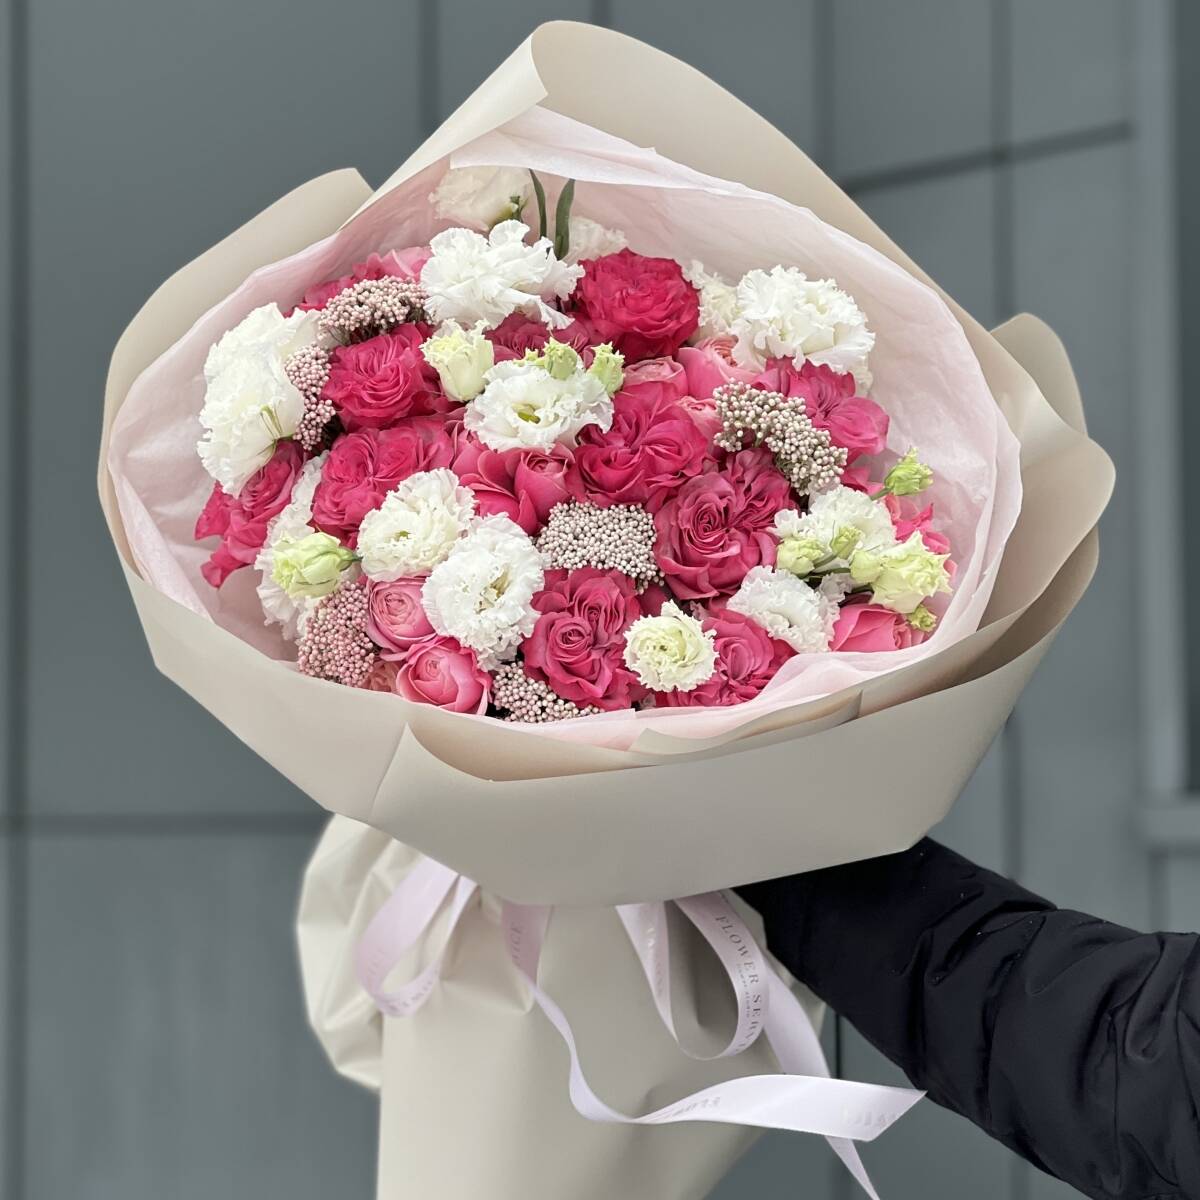 Букет Малиновый ангел из роз сорта кантри блюз, эустомы, озотамнуса и кустовых роз